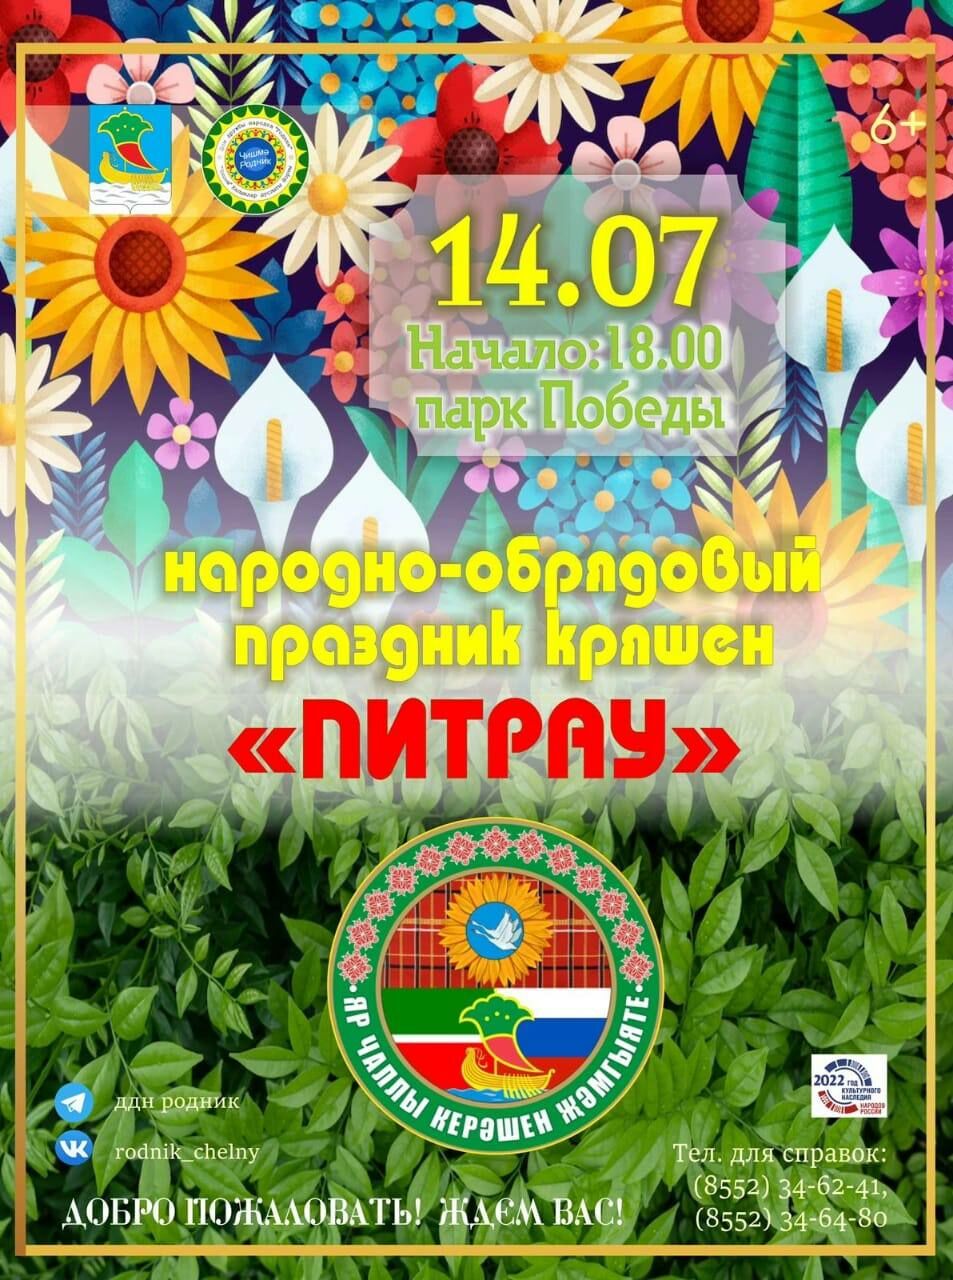 Власти Челнов анонсировали праздничные мероприятия на праздник «Питрау»